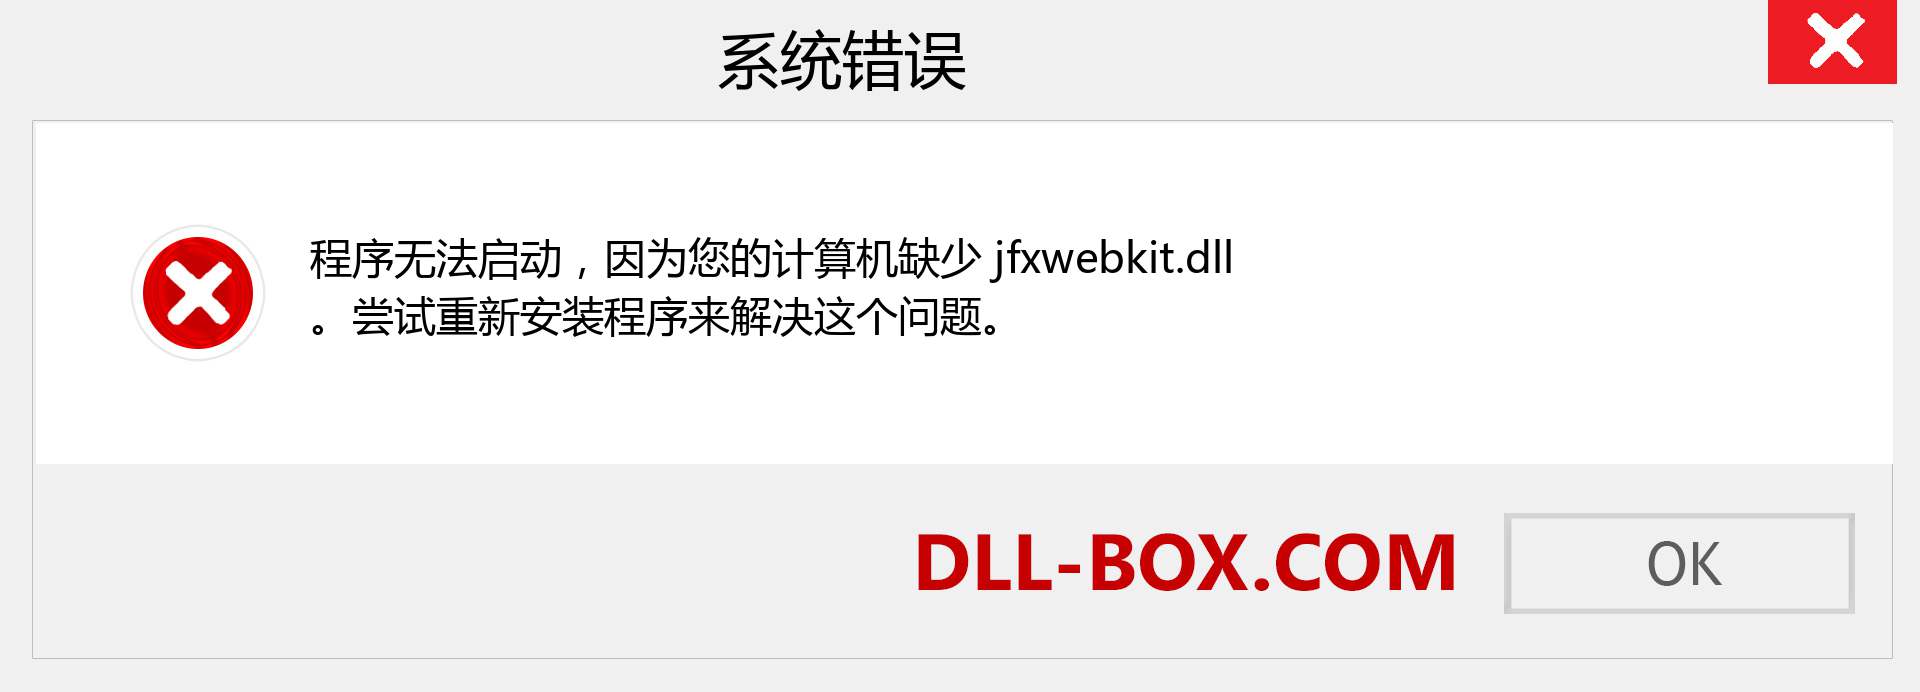 jfxwebkit.dll 文件丢失？。 适用于 Windows 7、8、10 的下载 - 修复 Windows、照片、图像上的 jfxwebkit dll 丢失错误